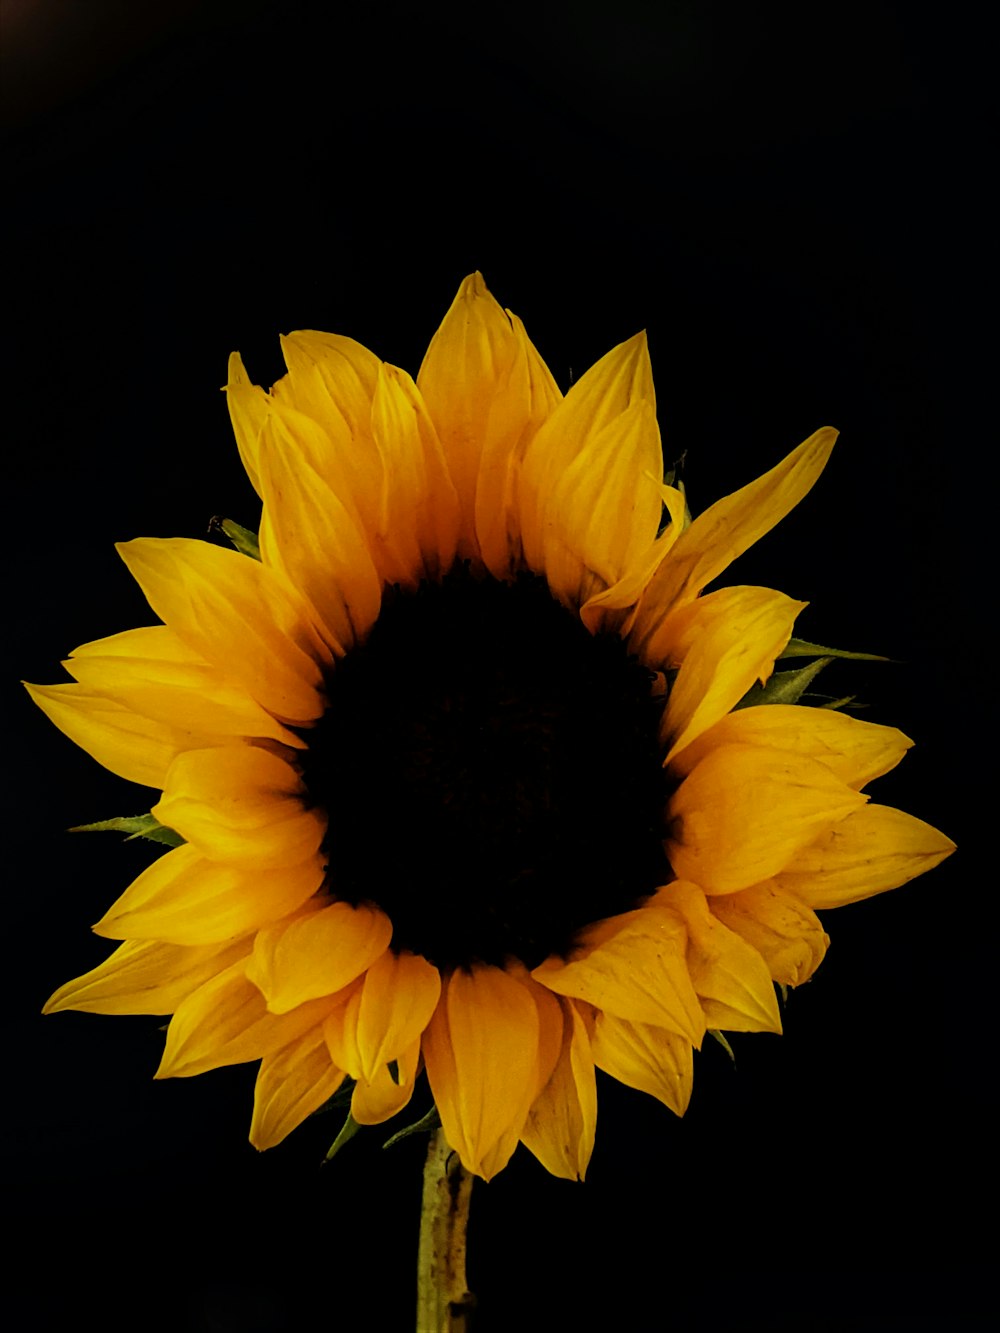 eine große gelbe Sonnenblume mit schwarzem Hintergrund